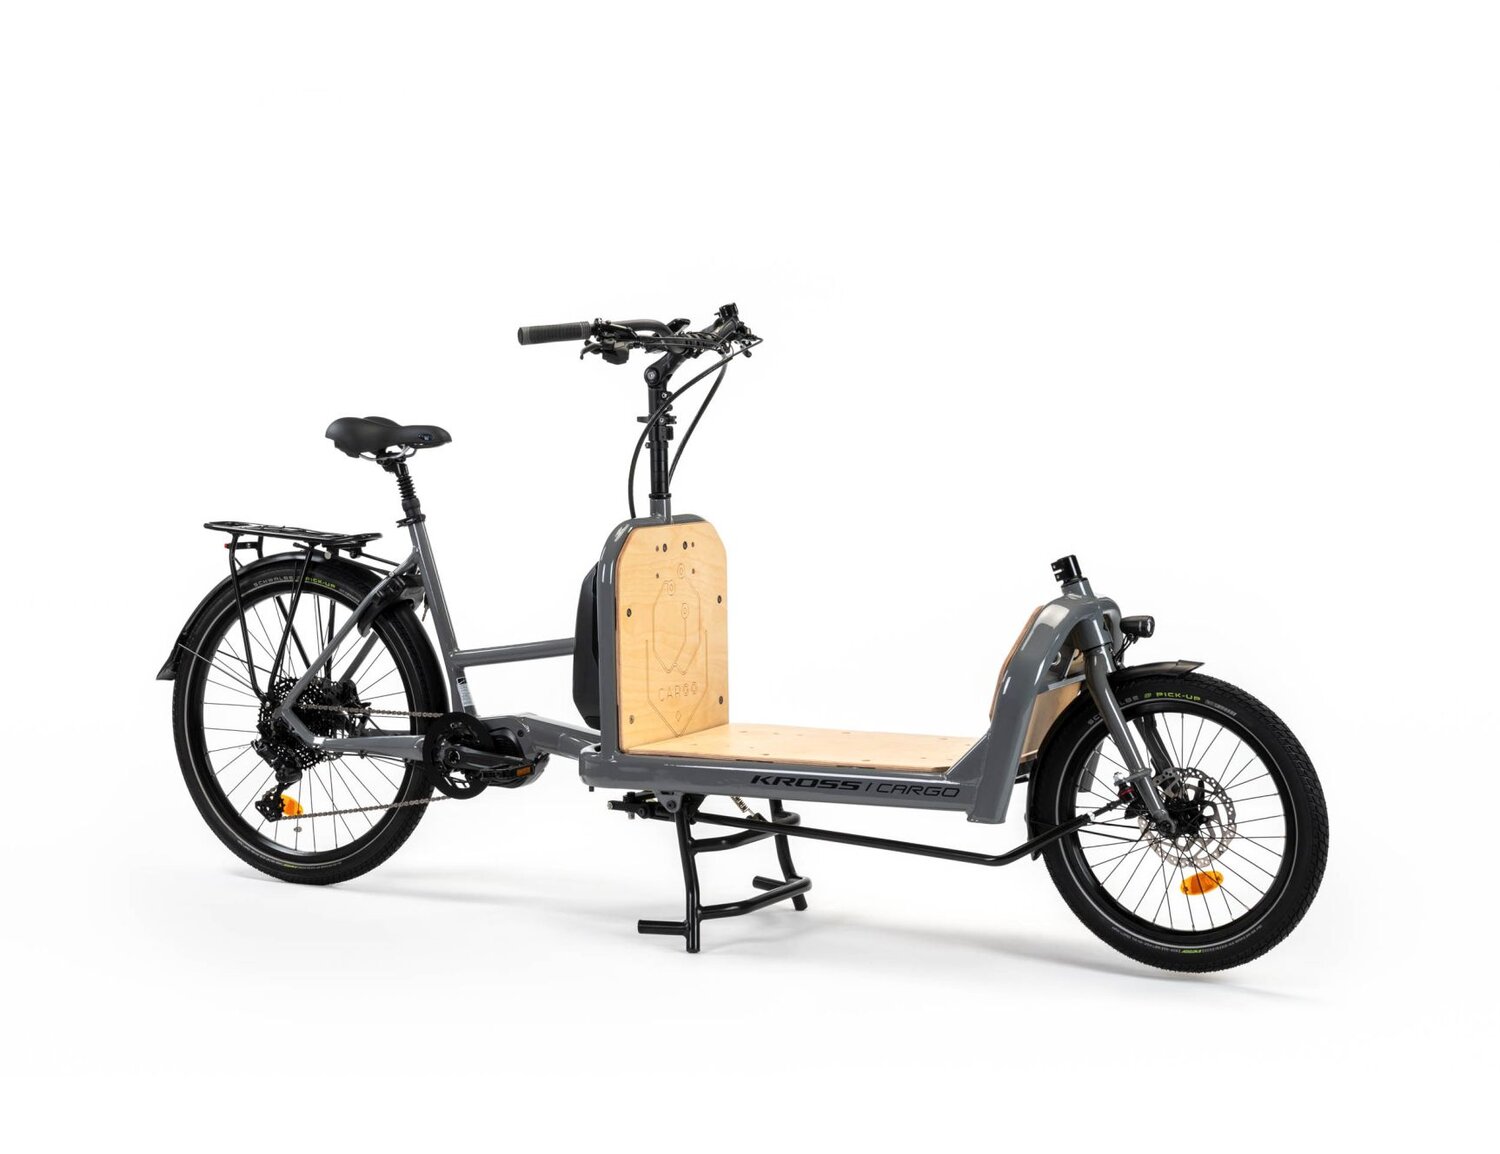  Elektryczny rower cargo Ebike KROSS E-Cargo 1.0 Platform na aluminiowej ramie w kolorze szarym wyposażony w osprzęt Microshift i Shimano oraz elektryczny napęd Shimano 